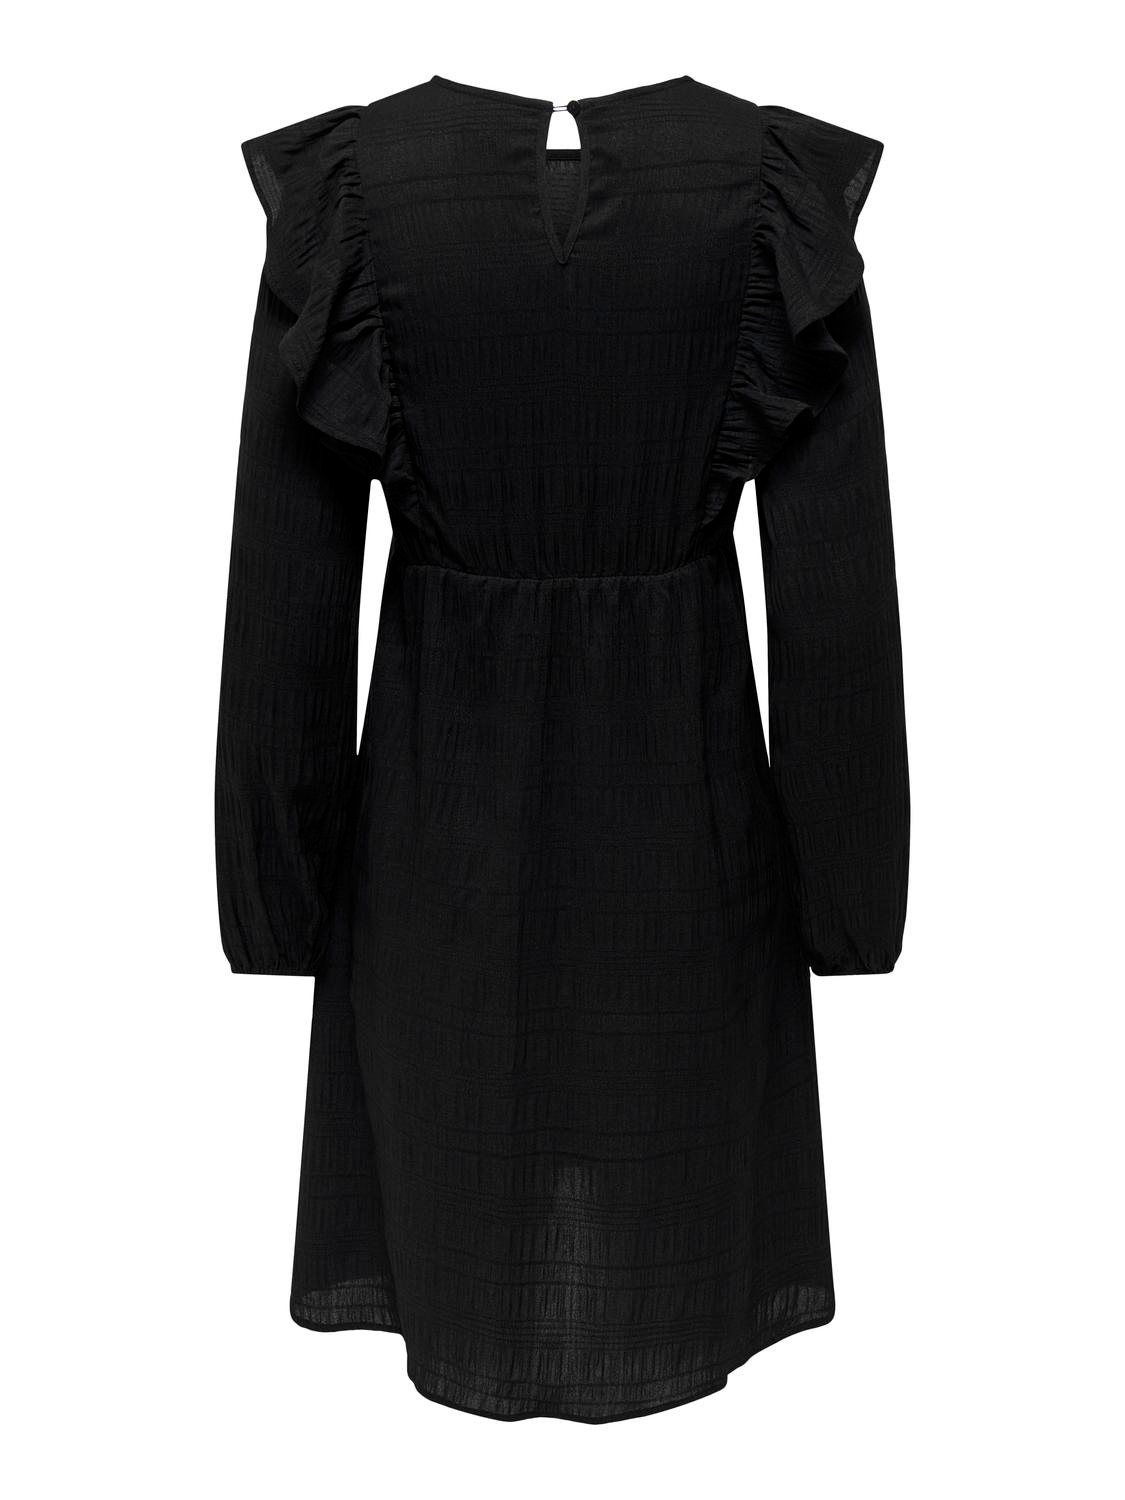 ONLY Krój regularny Okragly dekolt Ciazowe Elastyczne mankiety Obszerne rekawy Krótka sukienka -Black - 15326973